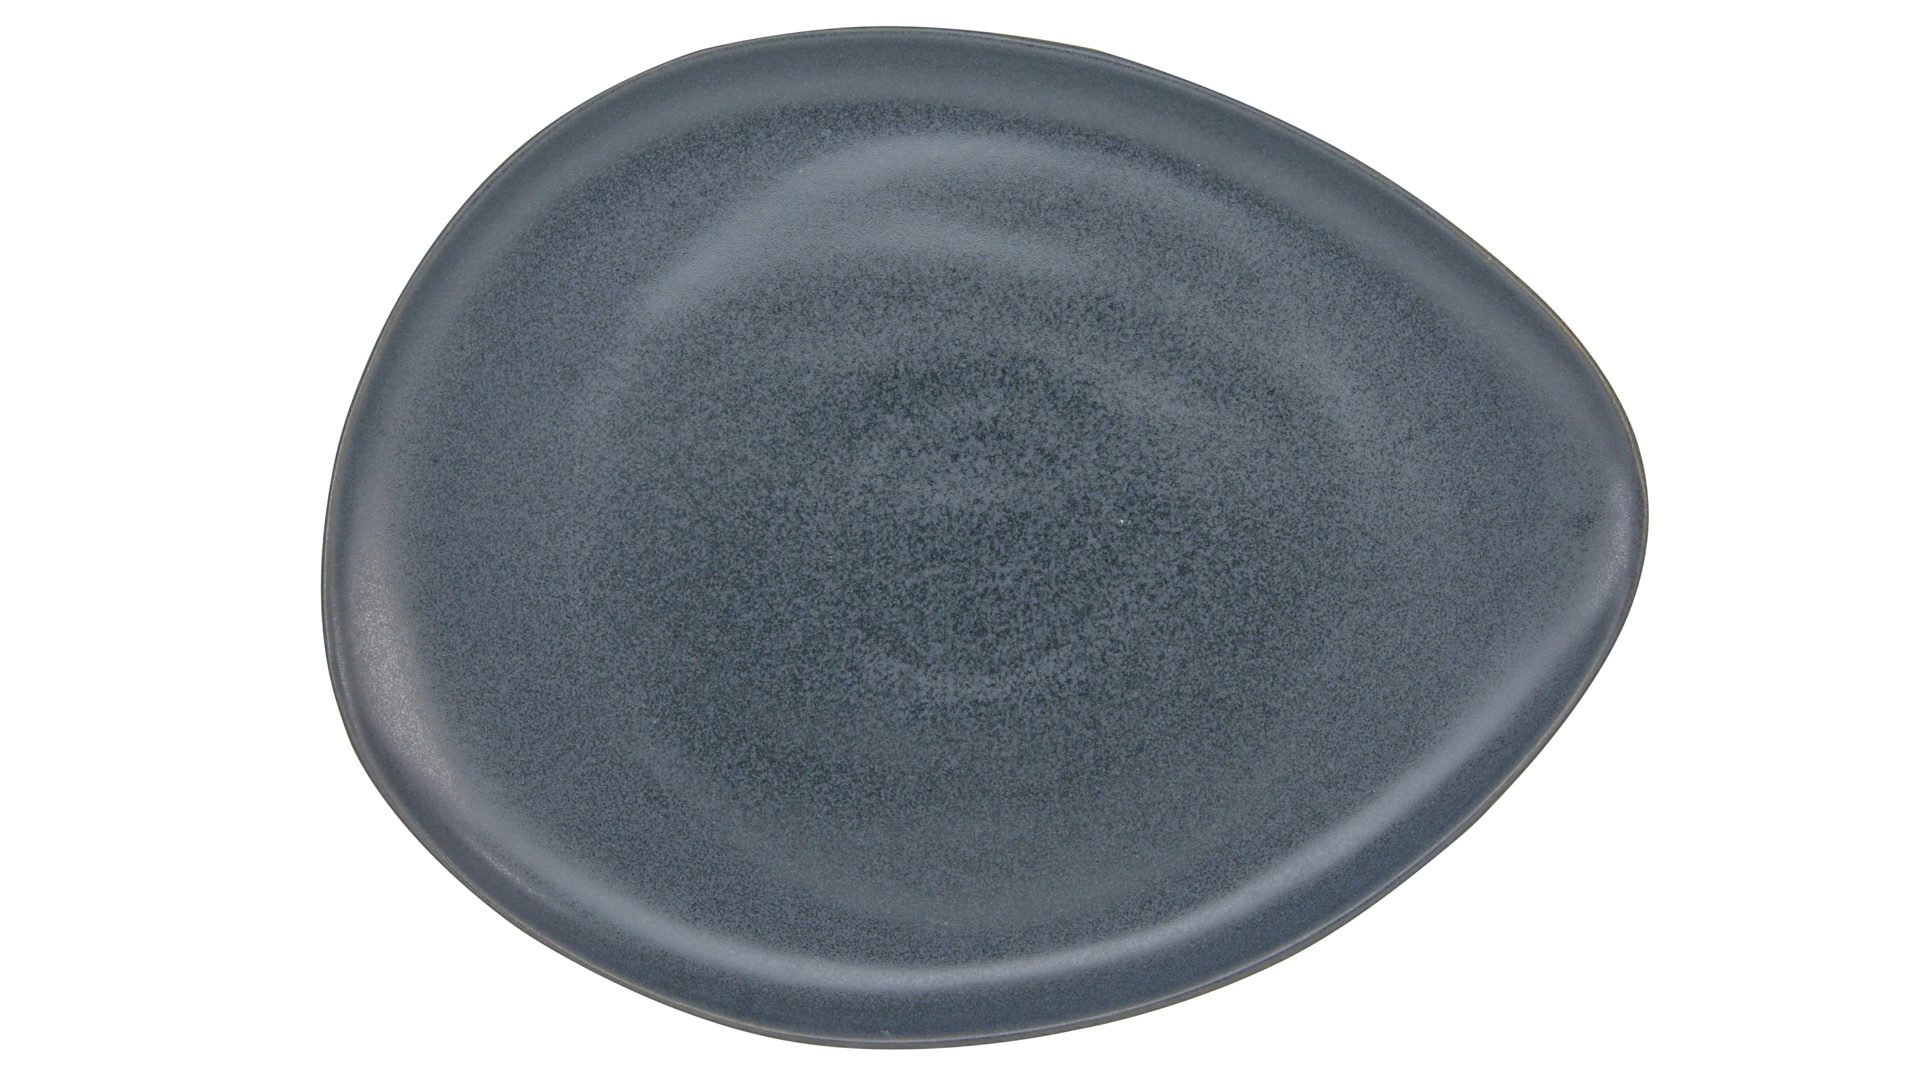 Platte Creatable aus Steinzeug in Schwarz CREATABLE Pietra – XXL-Platte schwarzes Steinzeug – ca. 25 x 43 cm